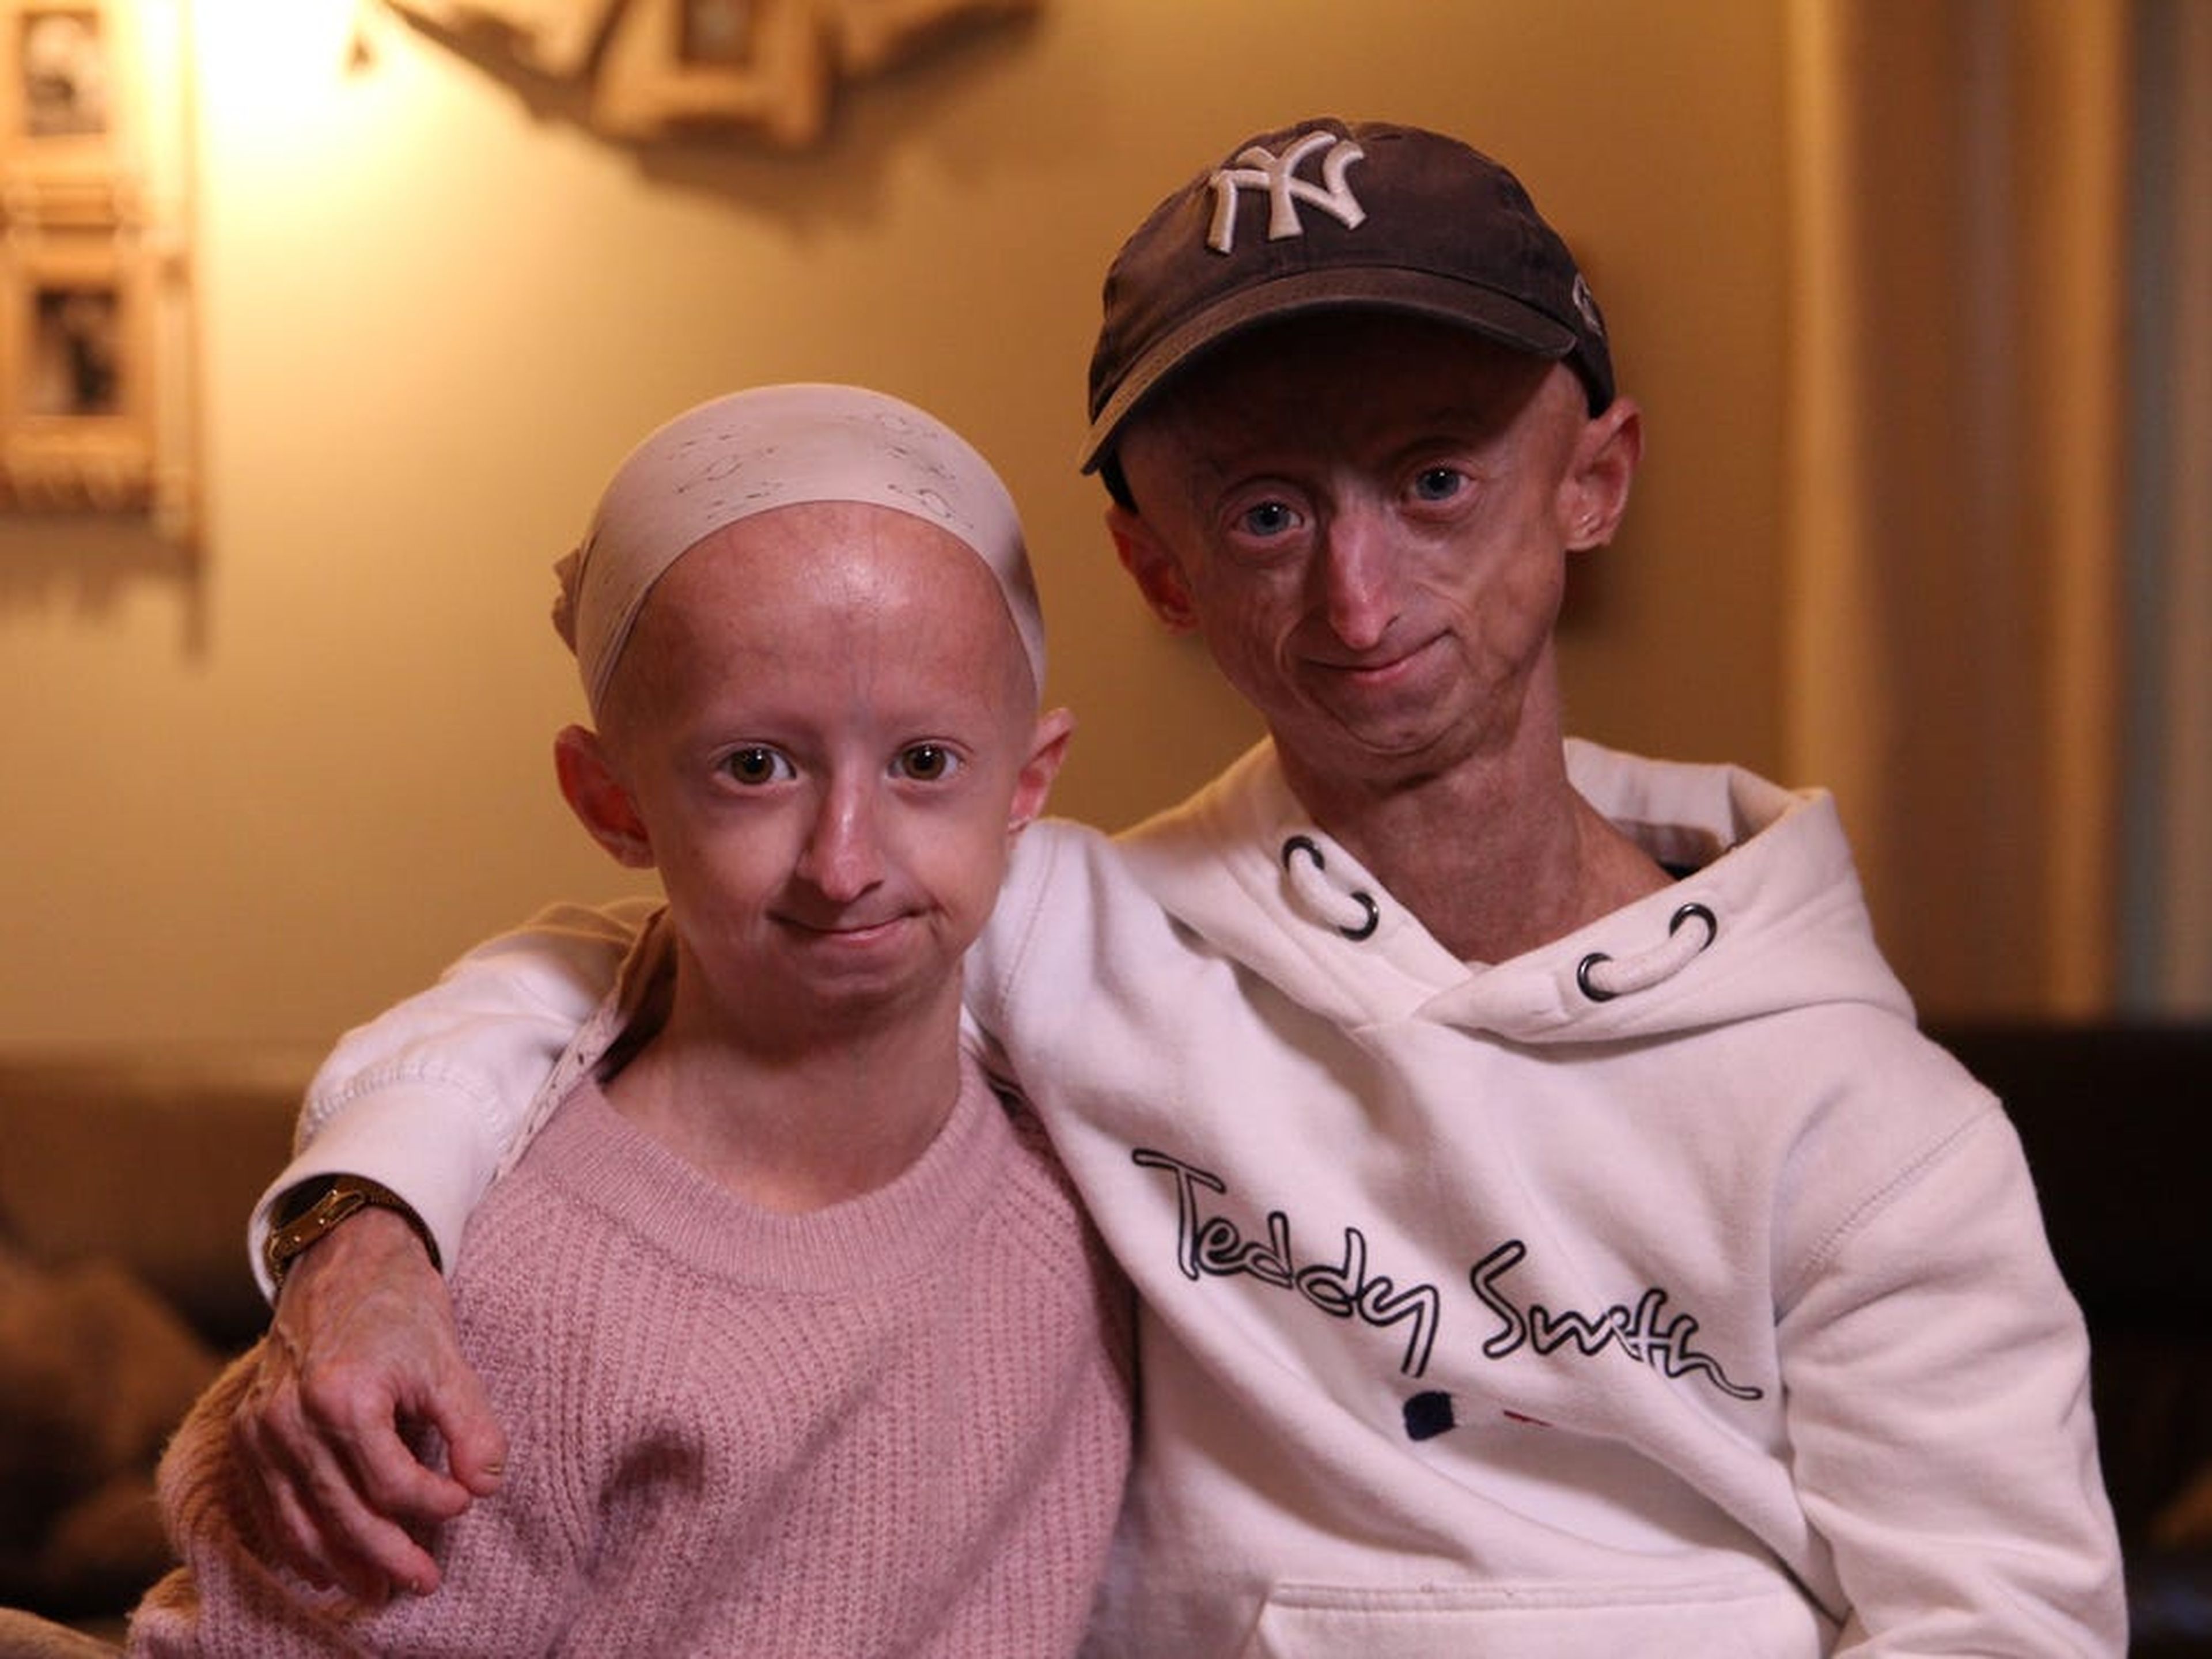 Los hermanos Michiel y Amber Vandeweert padecen progeria, una enfermedad genética caracterizada por los signos de un envejecimiento acelerado y prematuro.